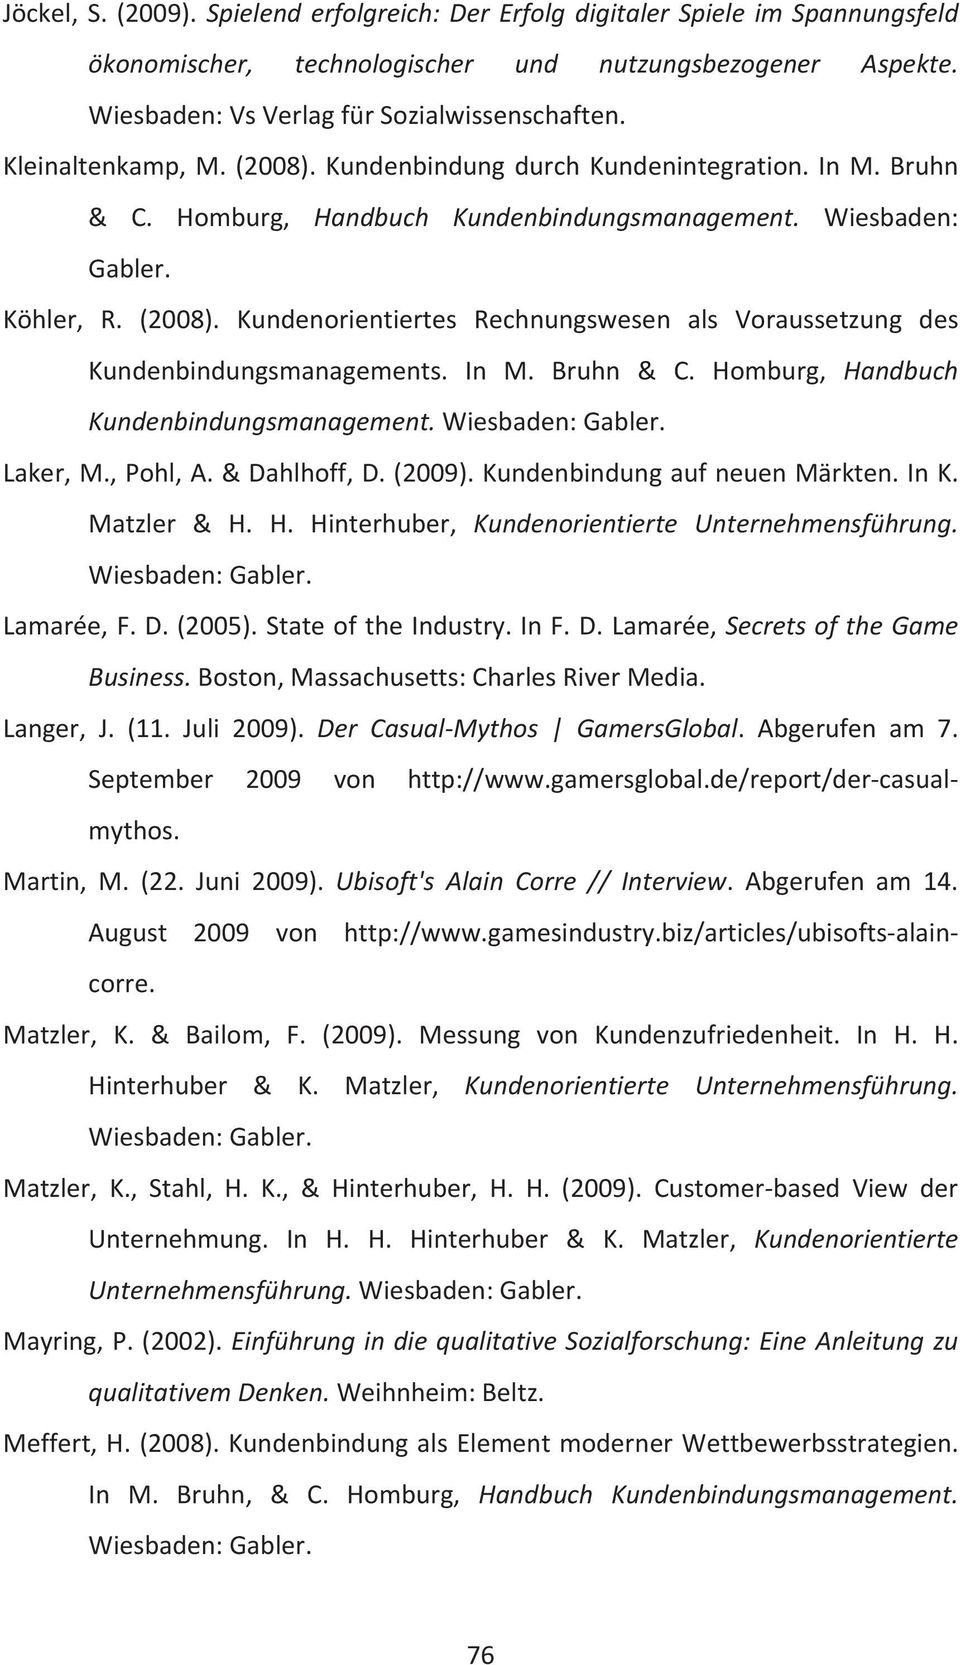 In M. Bruhn & C. Homburg, Handbuch Kundenbindungsmanagement. Laker, M., Pohl, A. & Dahlhoff, D. (2009). Kundenbindung auf neuen Märkten. In K. Matzler & H. H. Hinterhuber, Kundenorientierte Unternehmensführung.